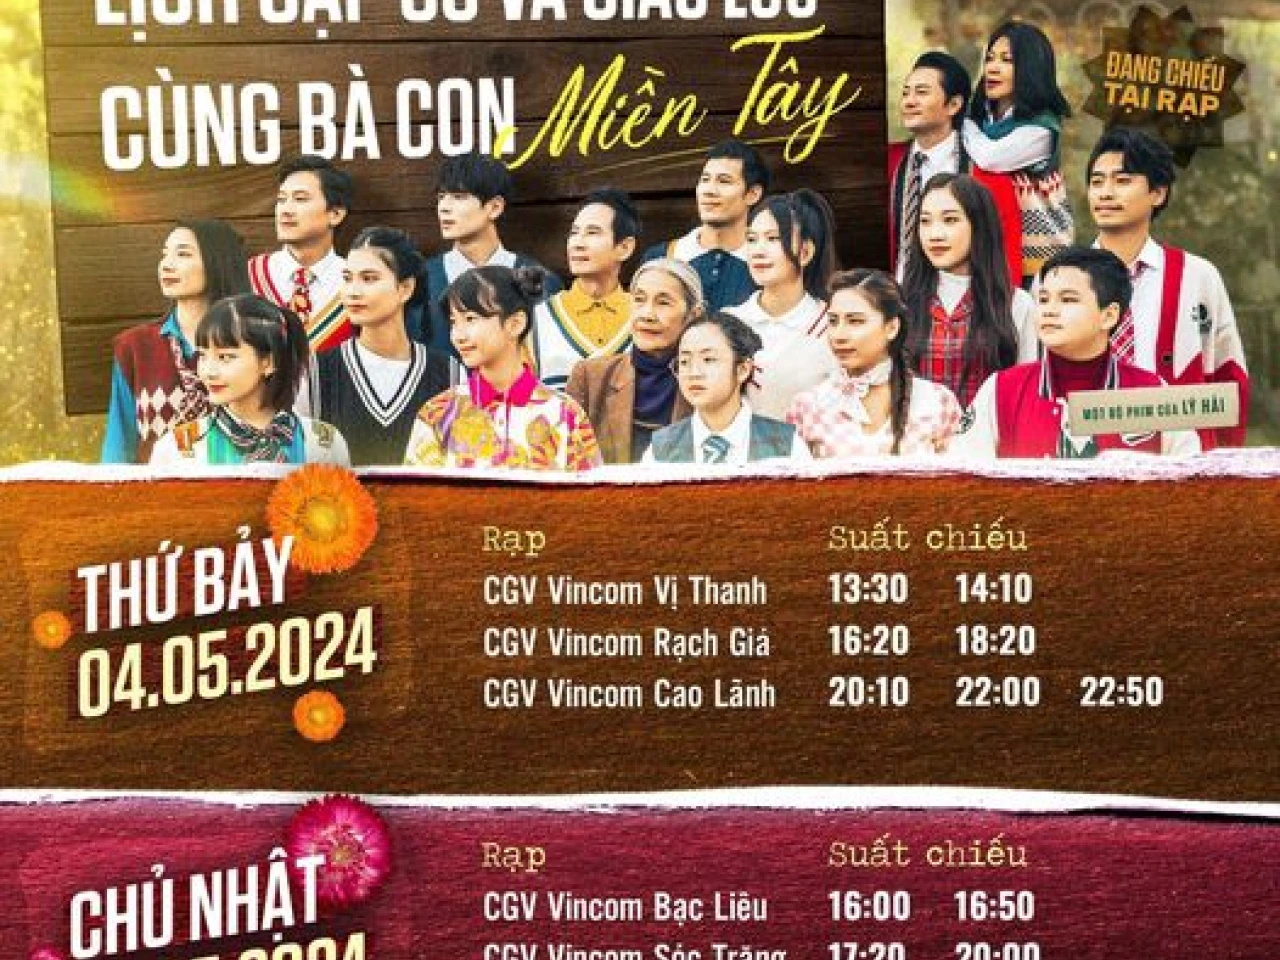 Cinetour cuối tuần của Lật Mặt tại CGV VINCOM TRÀ VINH